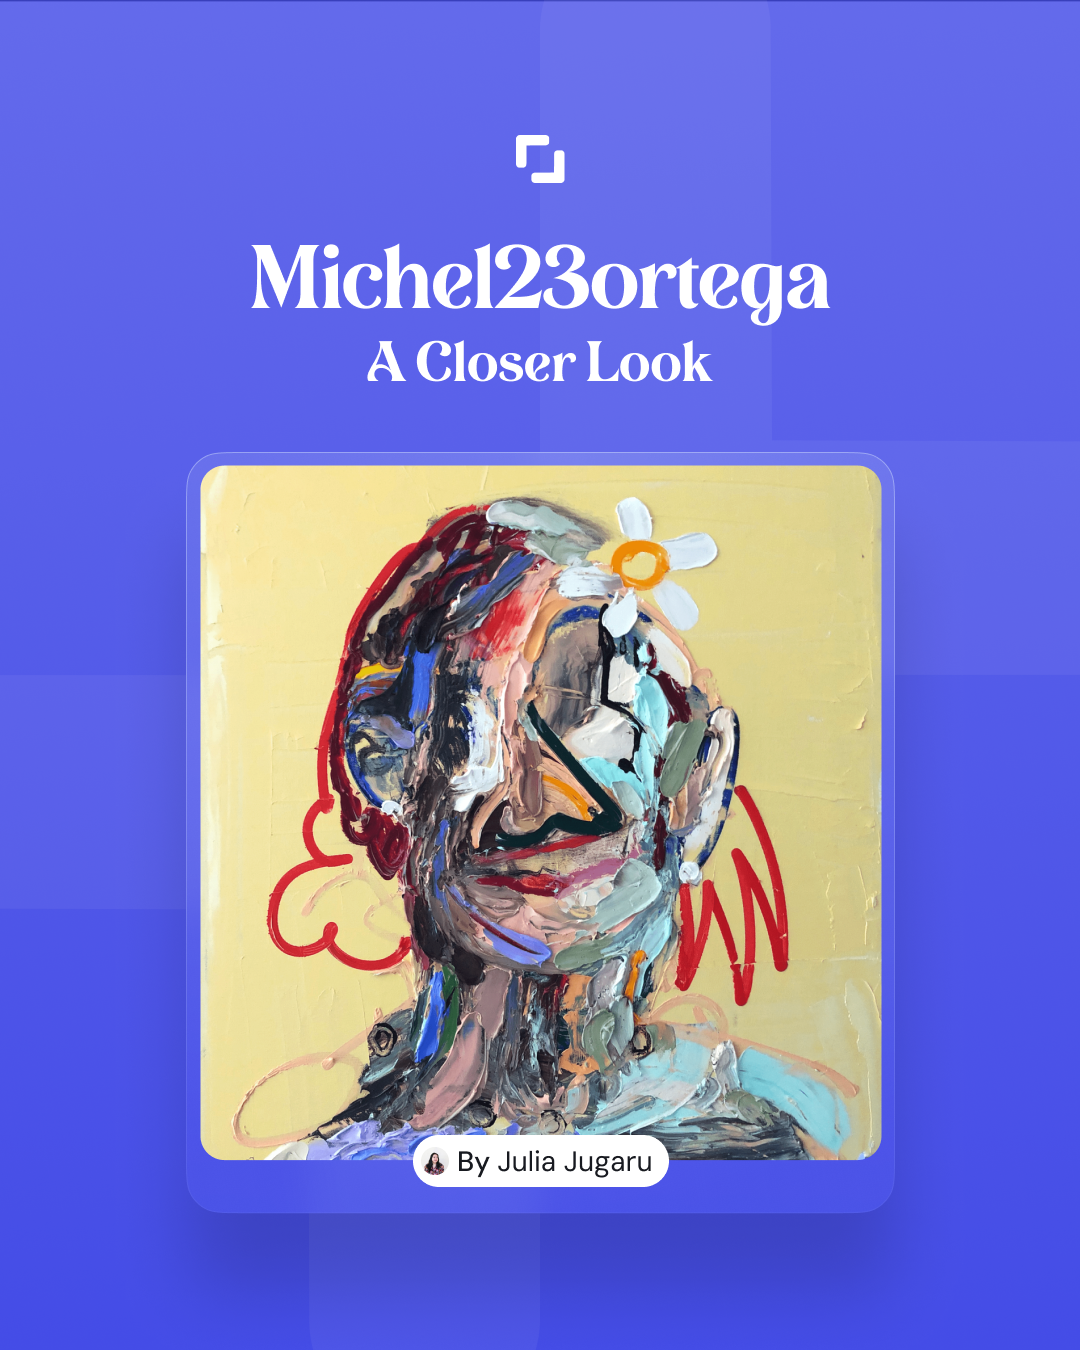 michel23ortega: A Closer Look